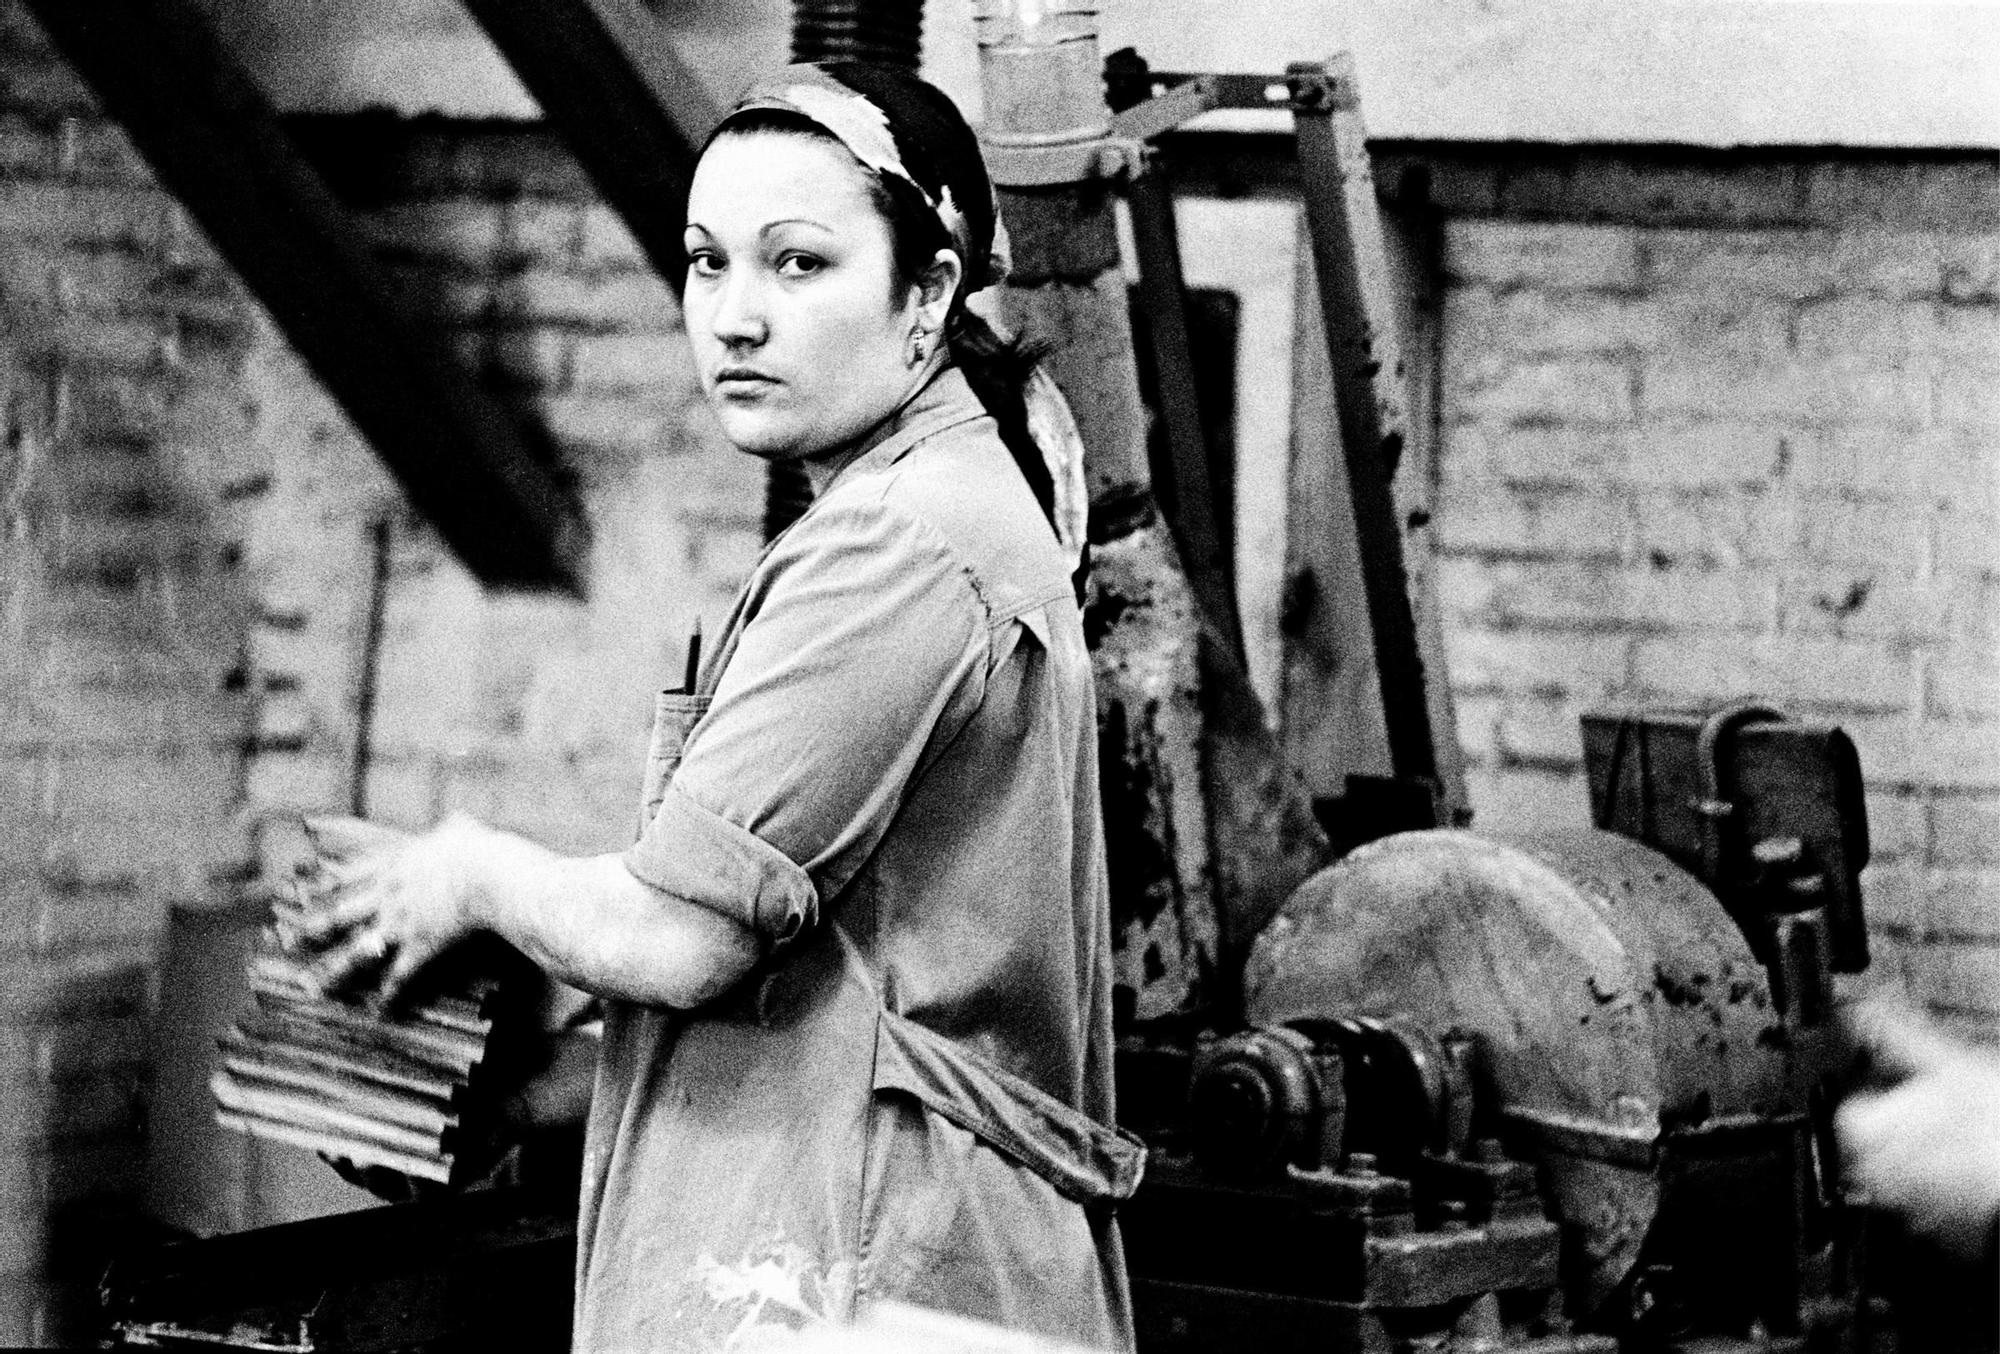 "Obrera en la fábrica", 1976